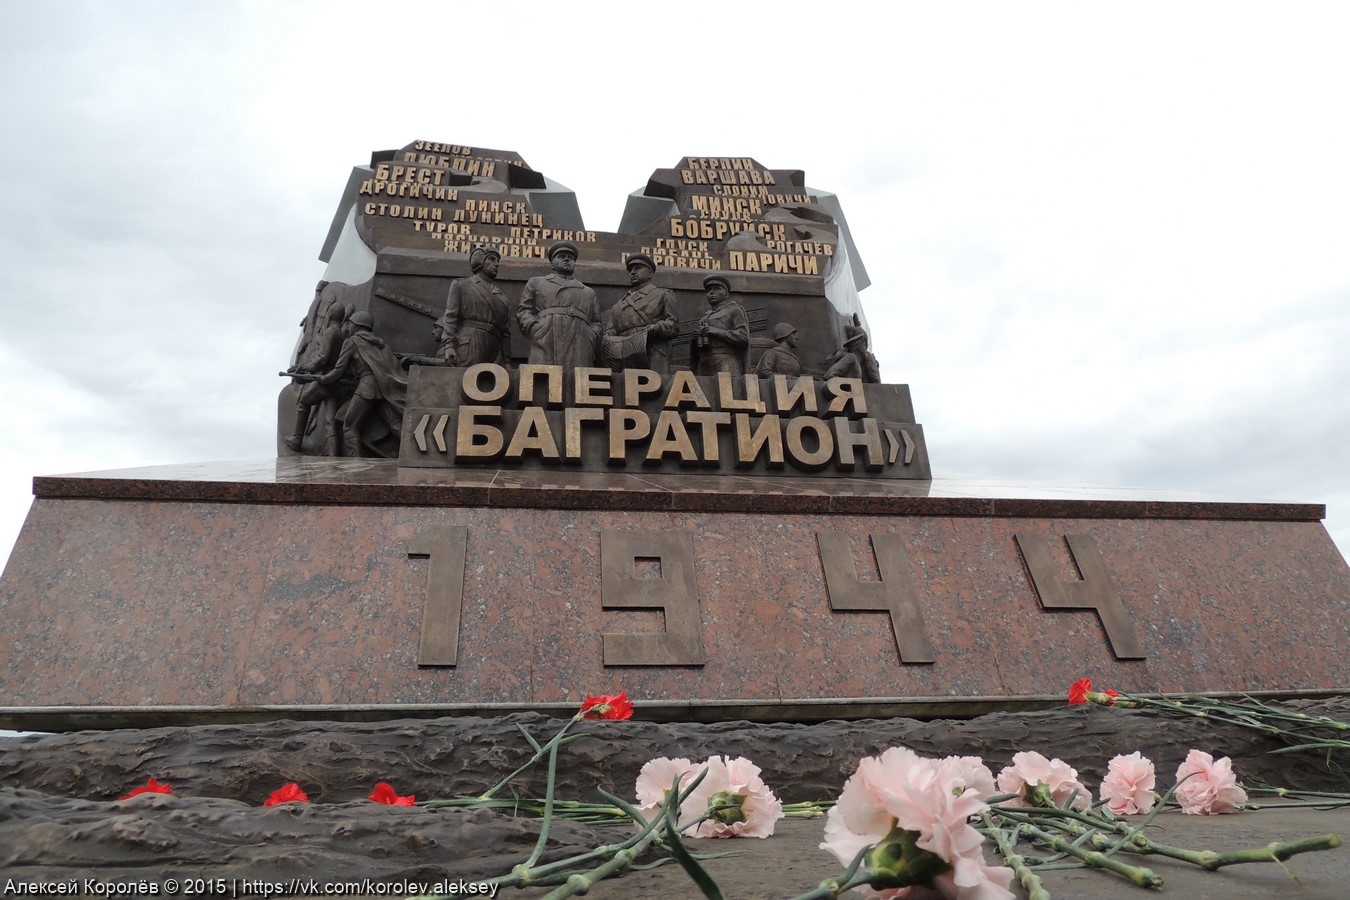 1944 год багратион. Багратион 1944. Операция "Багратион". Памятник операции Багратион в Белоруссии.